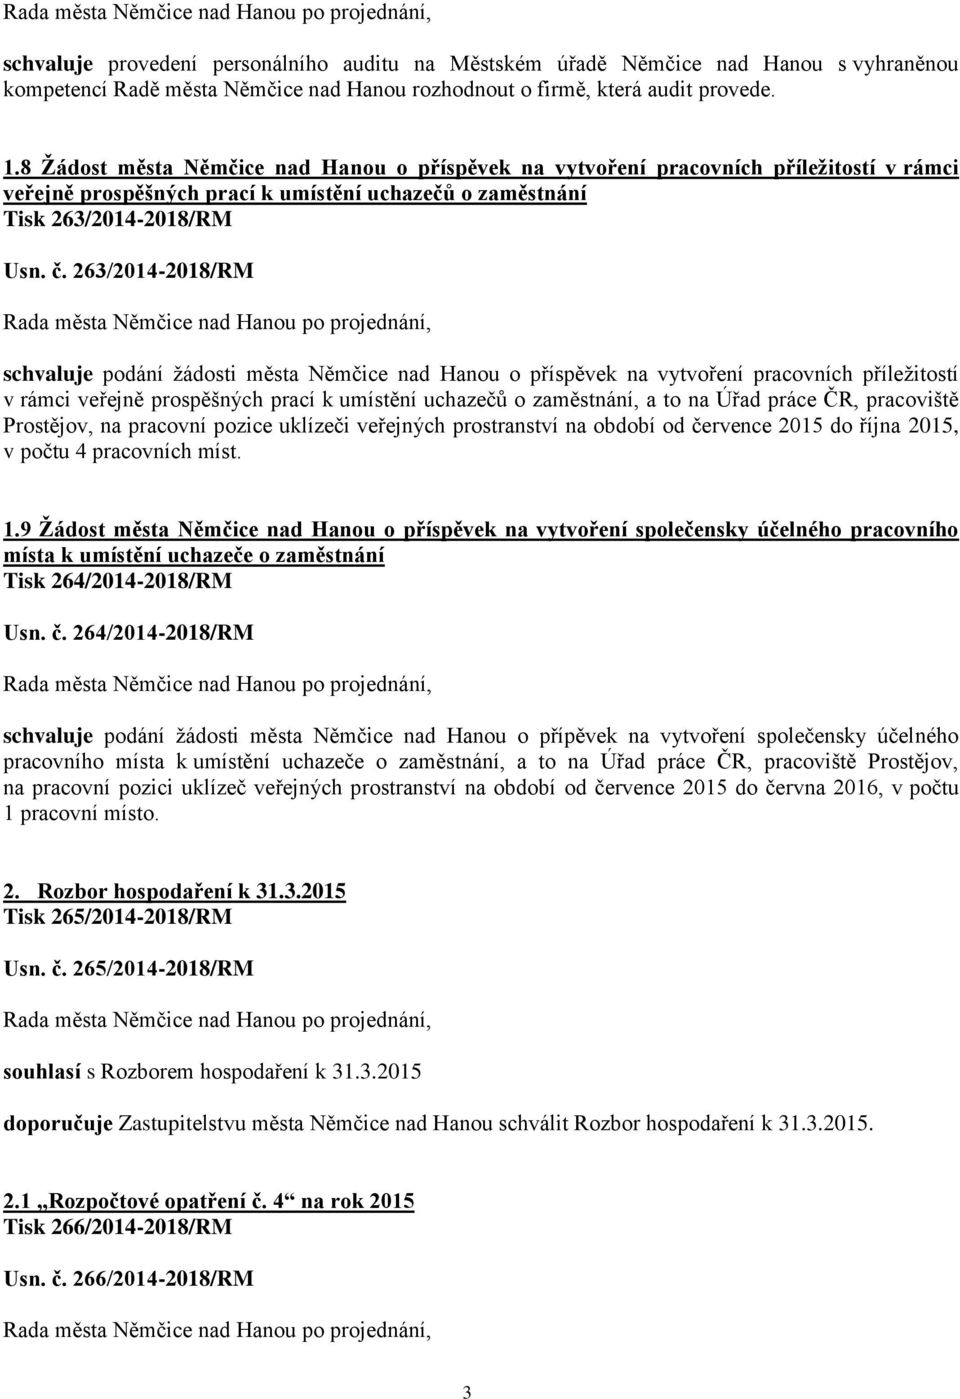 263/2014-2018/RM schvaluje podání žádosti města Němčice nad Hanou o příspěvek na vytvoření pracovních příležitostí v rámci veřejně prospěšných prací k umístění uchazečů o zaměstnání, a to na Úřad